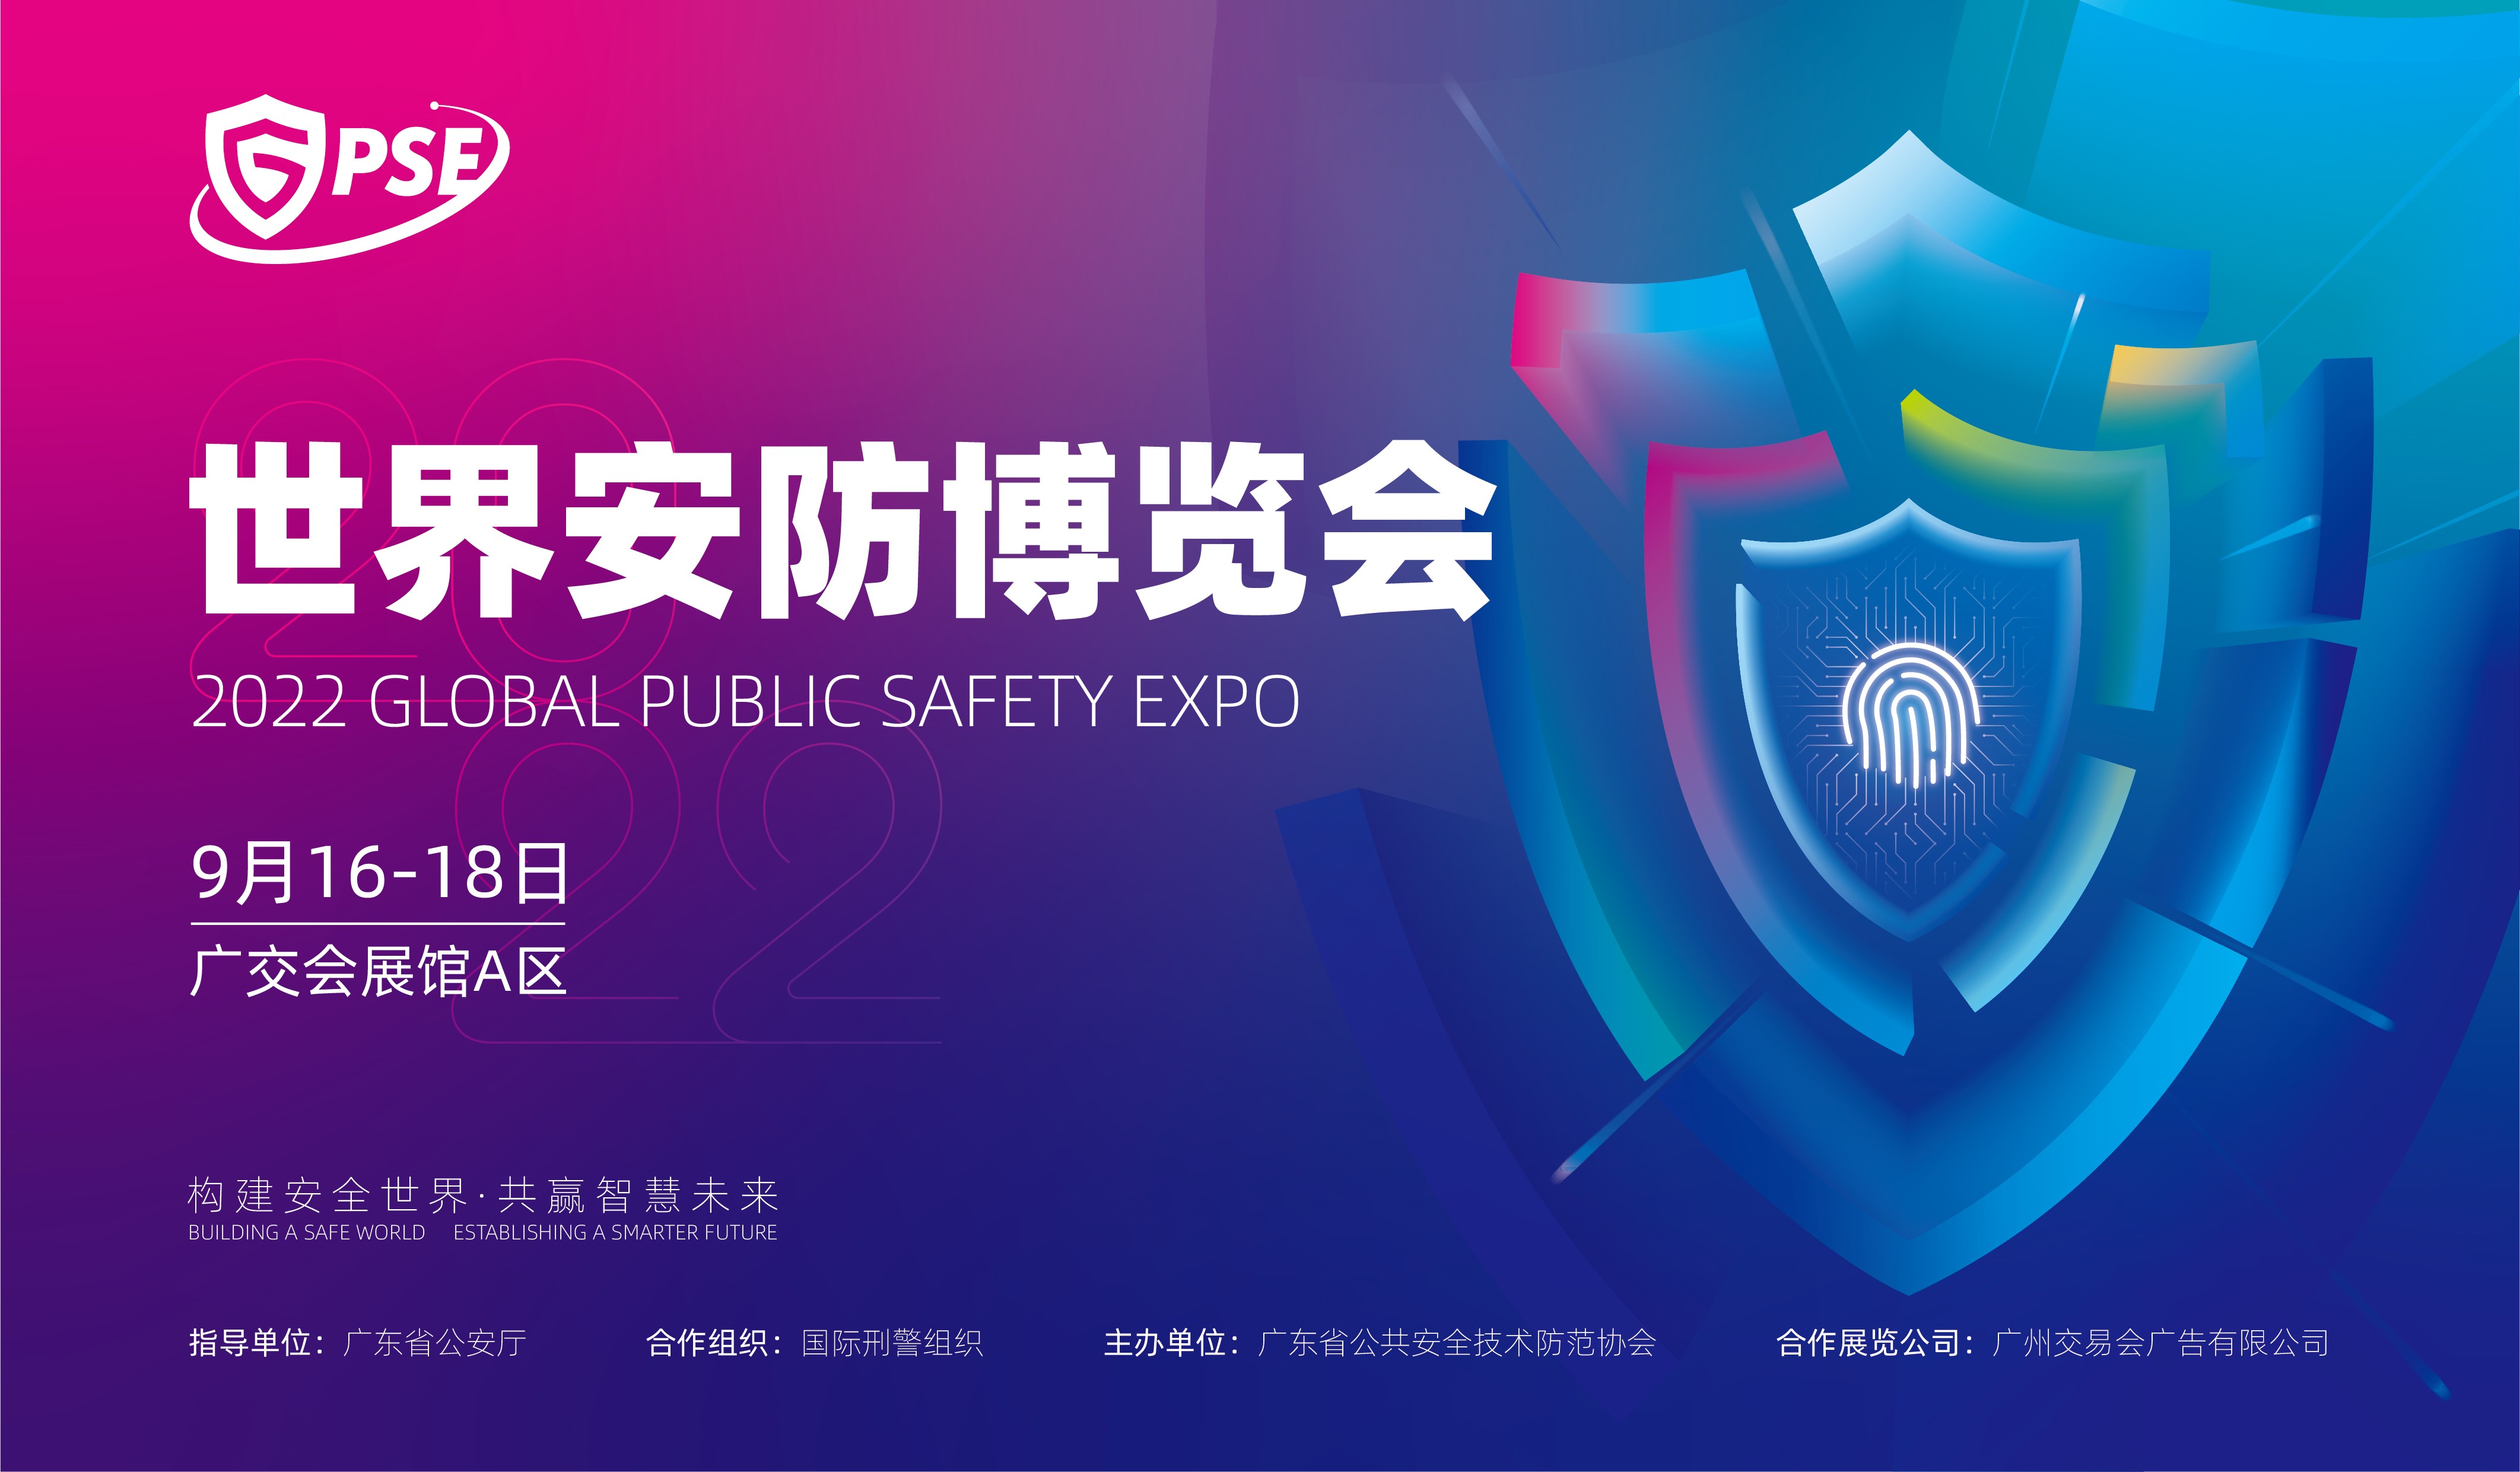 构建安全世界 共赢智慧未来-2022世界安防博览会(GPSE)